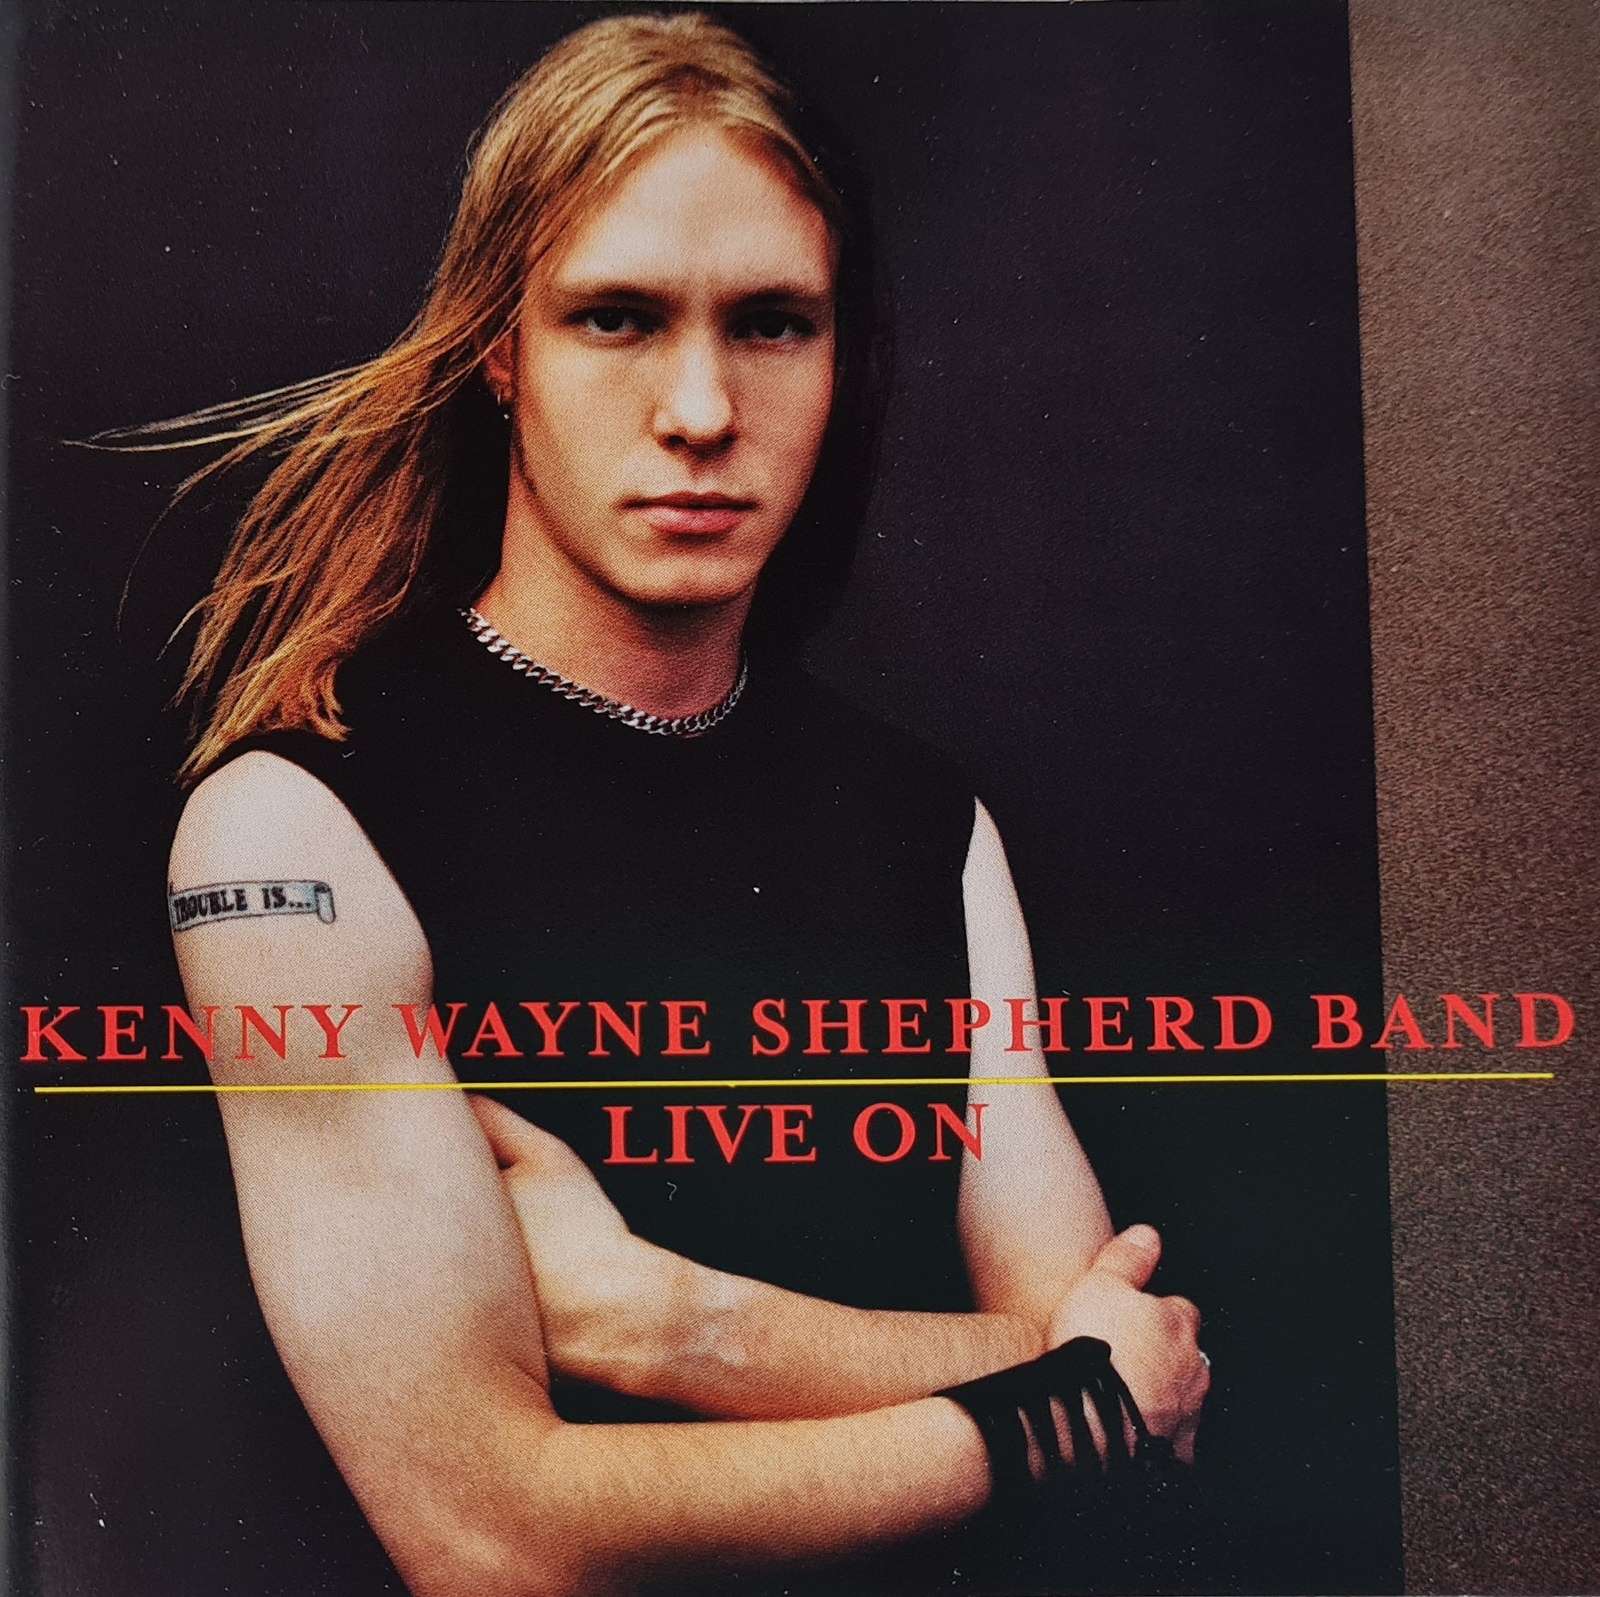 Kenny Wayne Shepherd Band - Live On (CD)